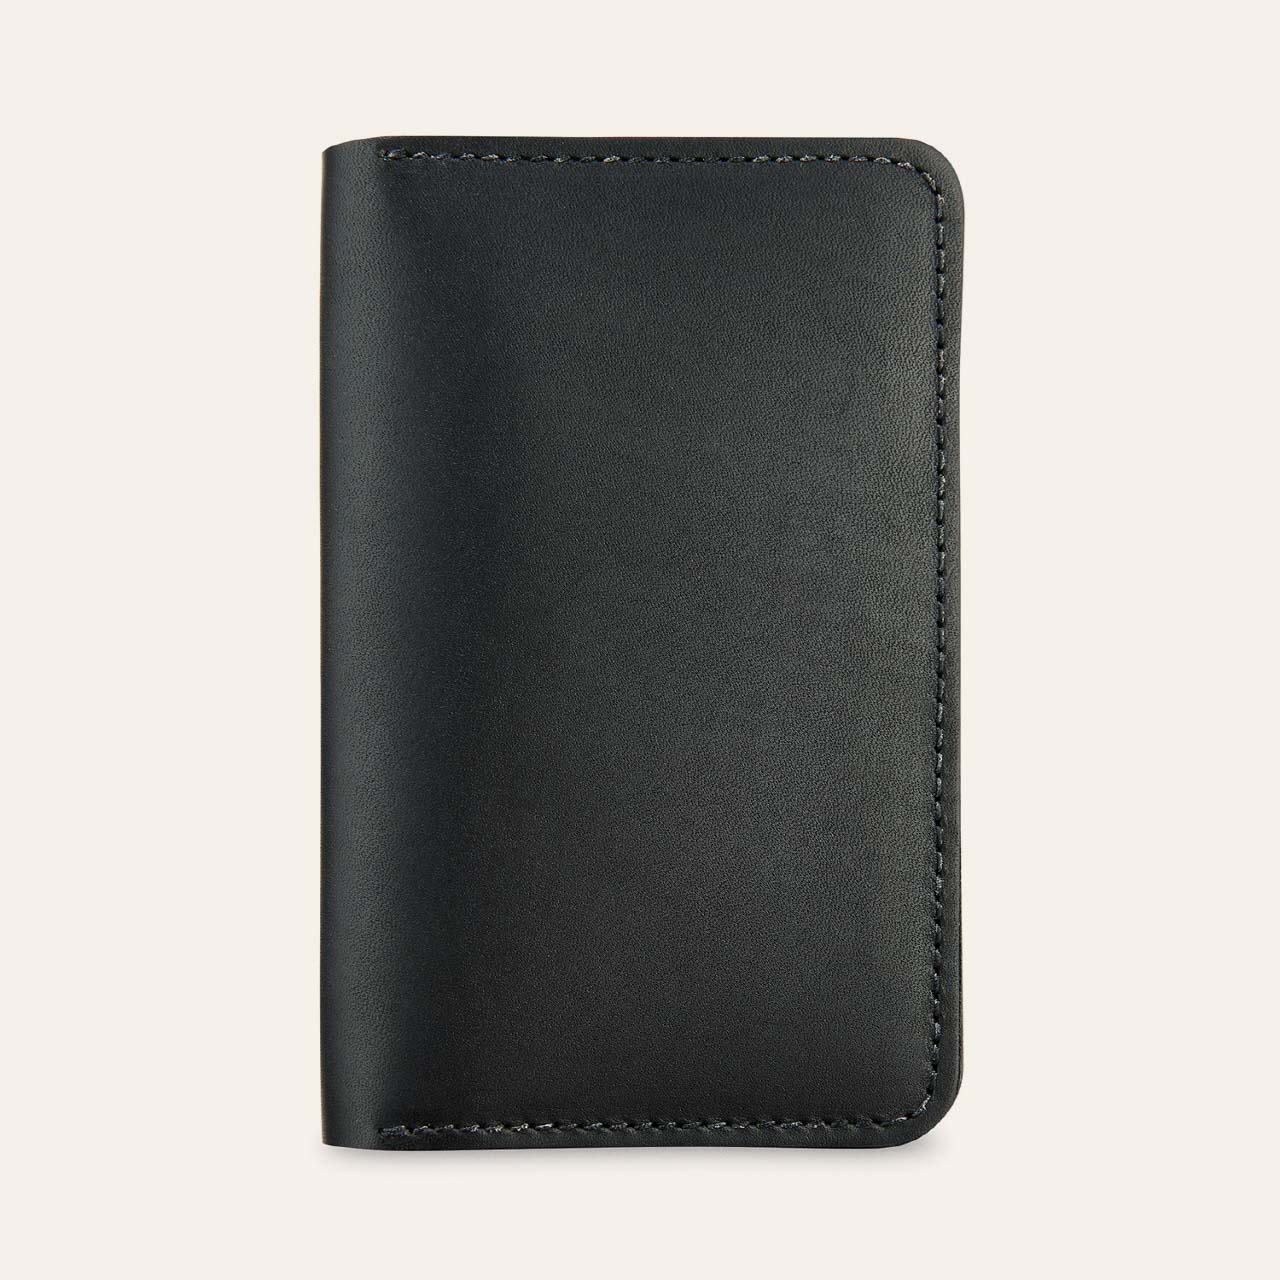 패스포트 지갑 95020 - 블랙 프론티어